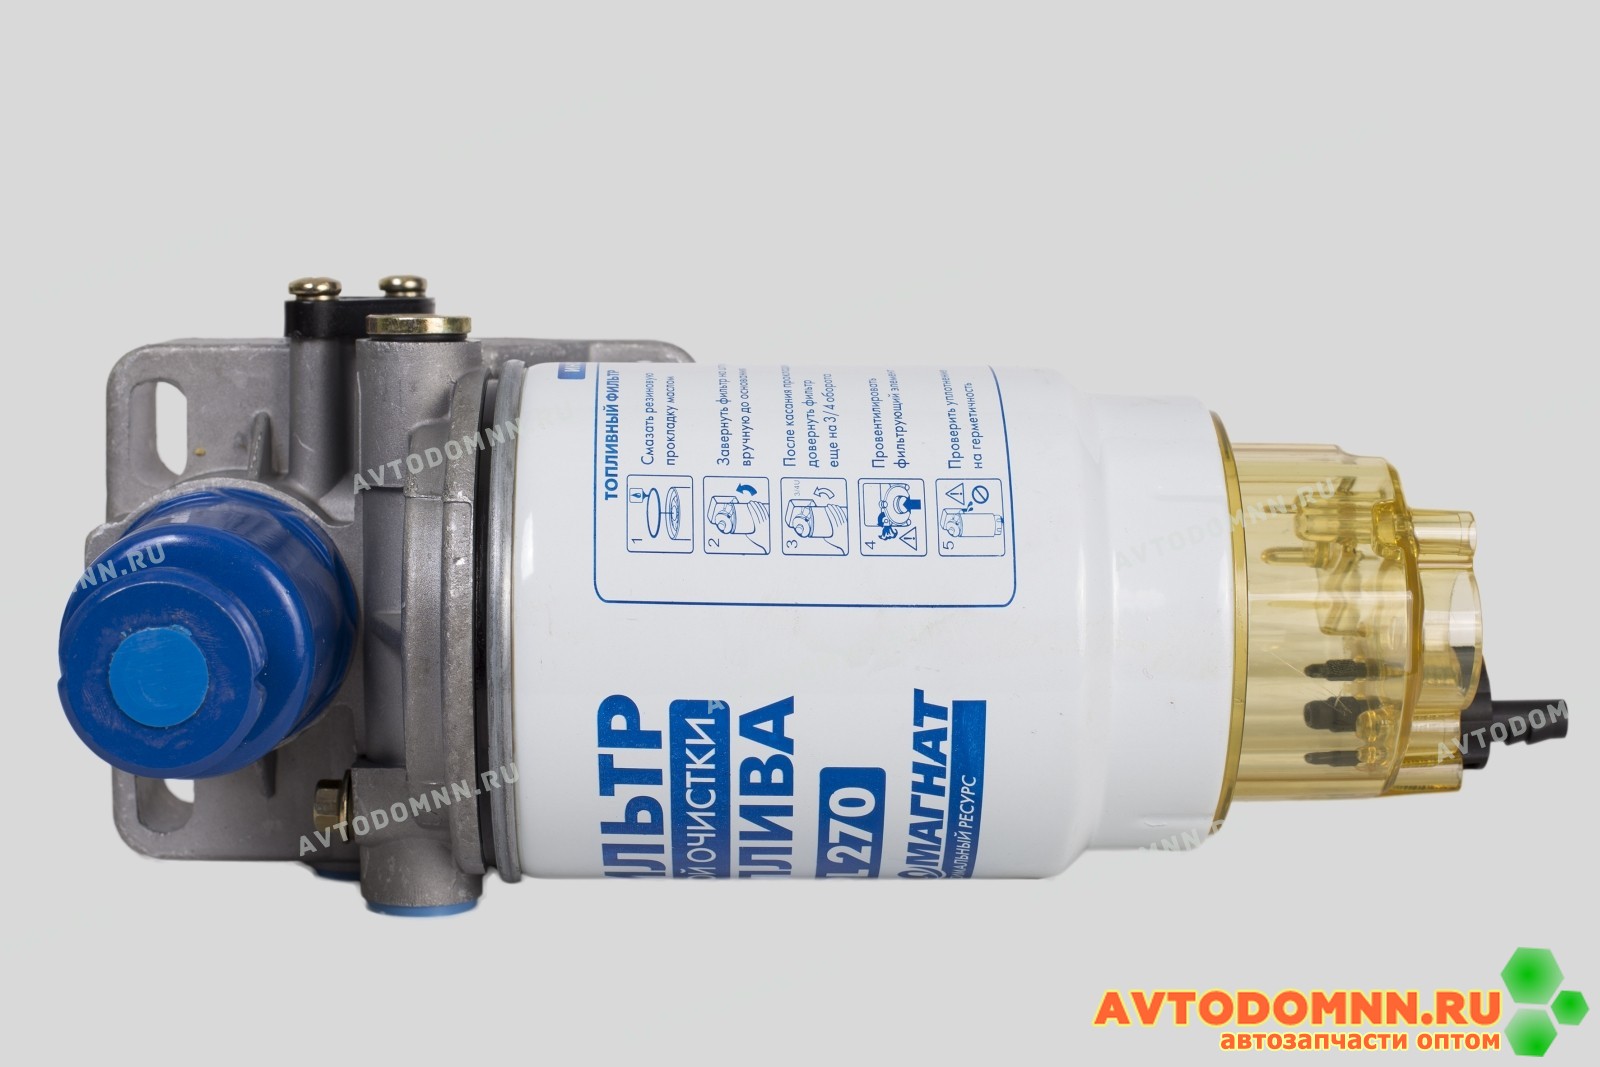 PL 270 ФГОТ ЕВРО-2 (Прилайн) маленький н/о, Фильтр грубой очистки топлива в сборе (высокого давления)